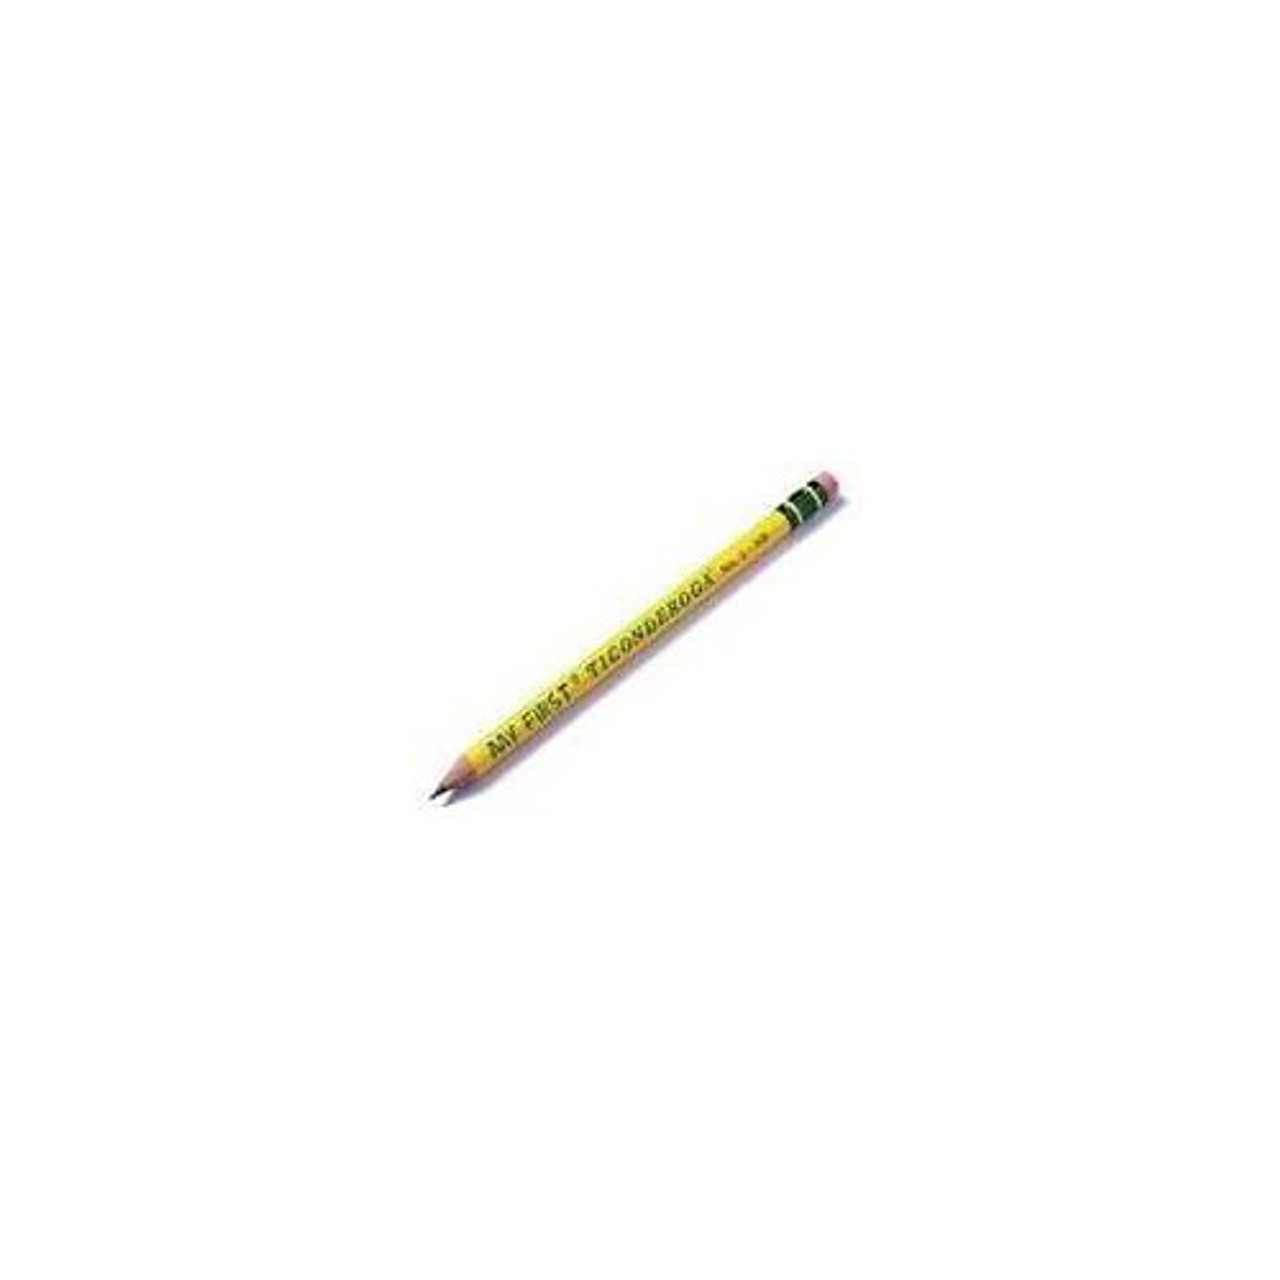 Ticonderoga Pencils, Premium Wood, No.2 HB - 10 pencils